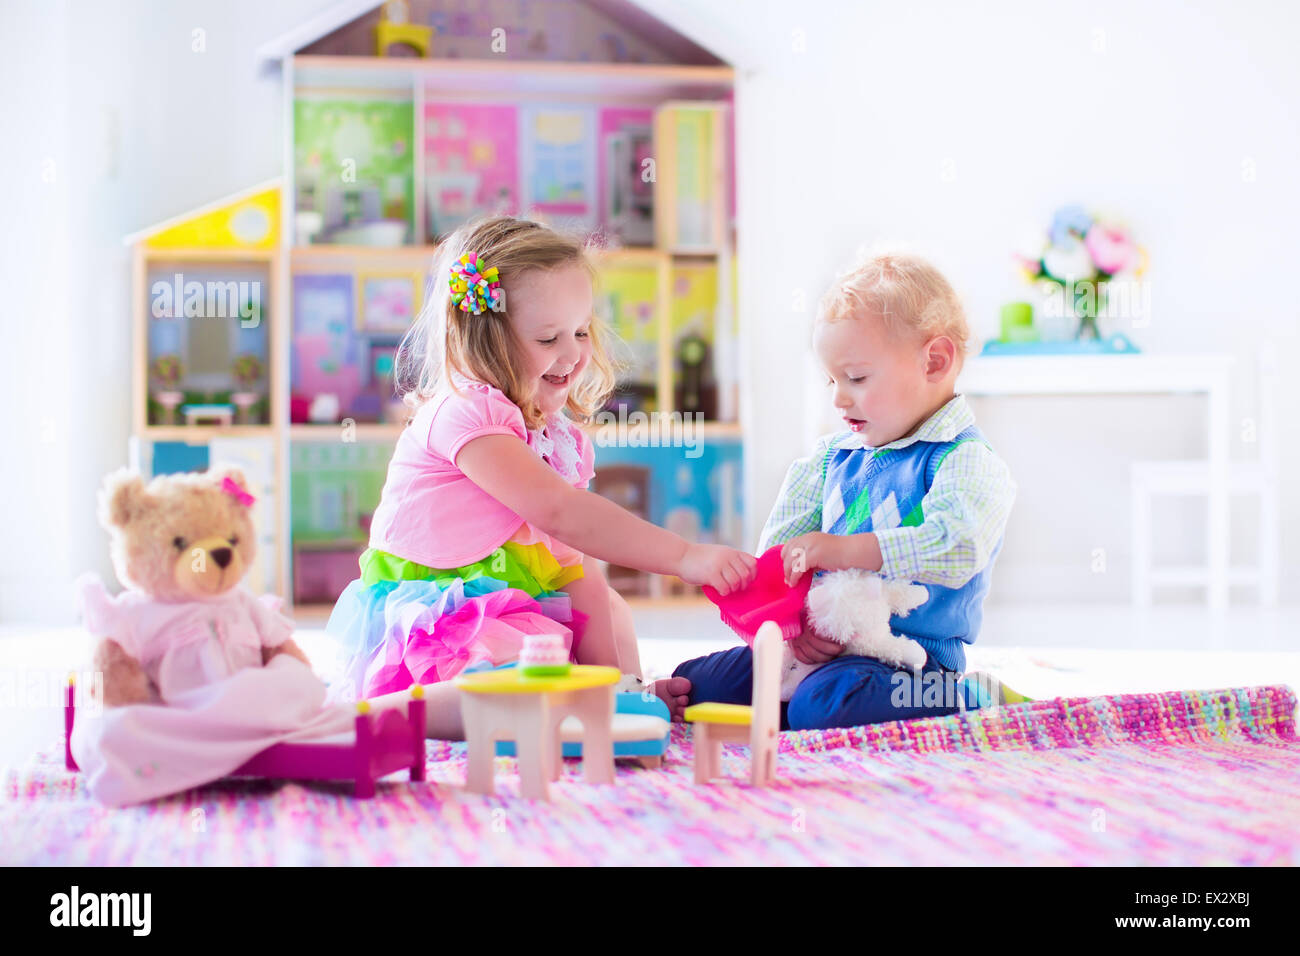 Kinder spielen mit Puppenhaus und tierischen Plüschtiere. Kinder sitzen auf  einem rosa Teppich im Spiel zu Hause oder im Kindergarten Stockfotografie -  Alamy